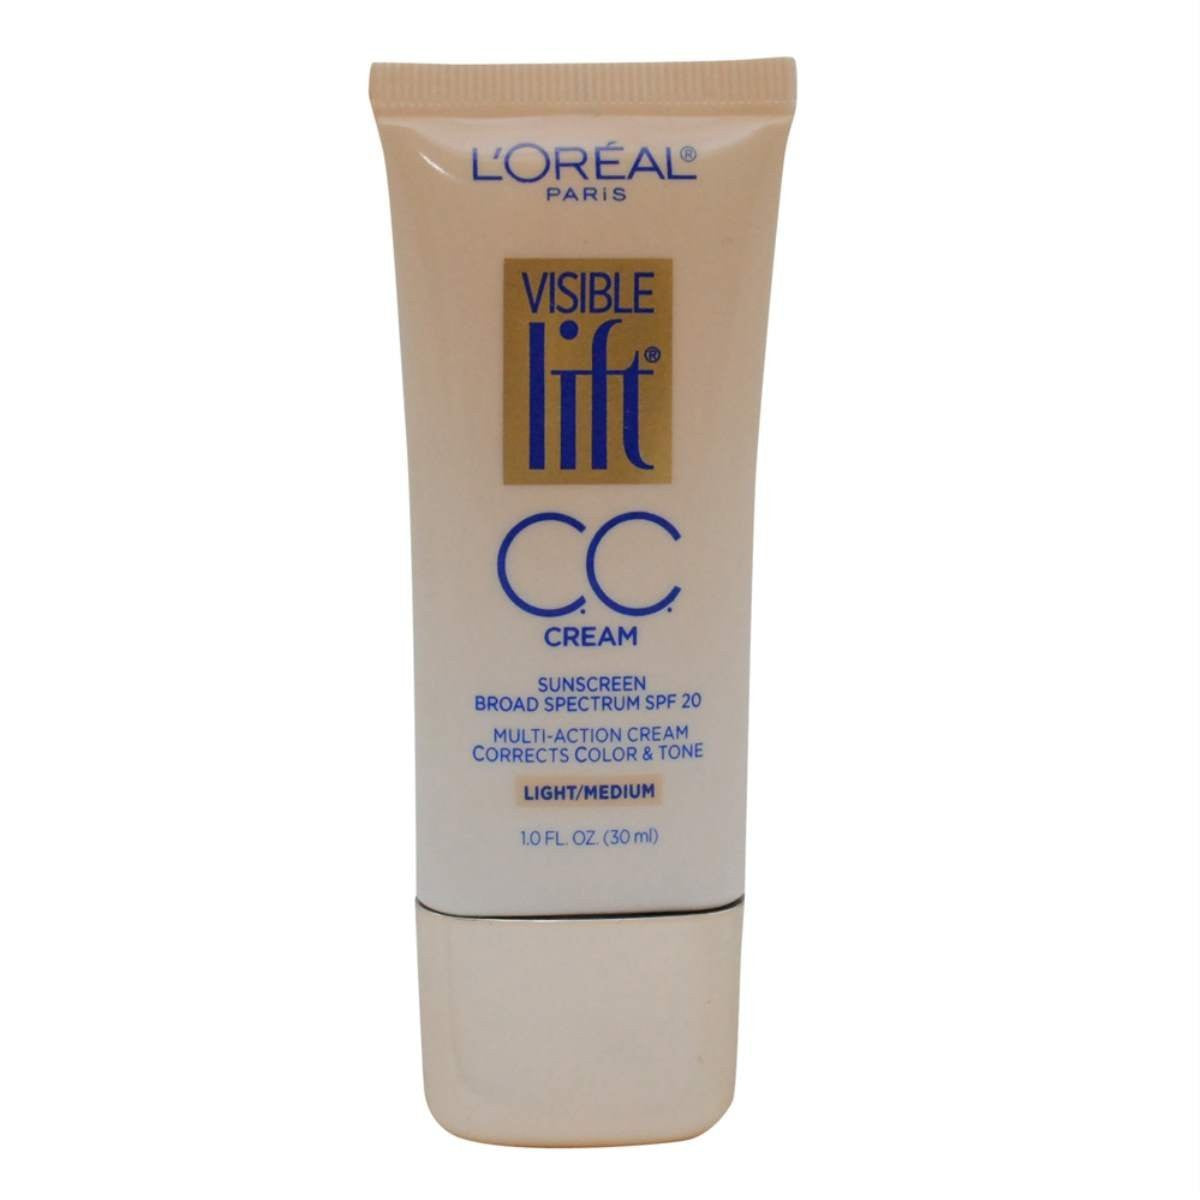 L'OREAL Visible Lift Cc Cream - 1.0 fl oz (30 ml) - ADDROS.COM